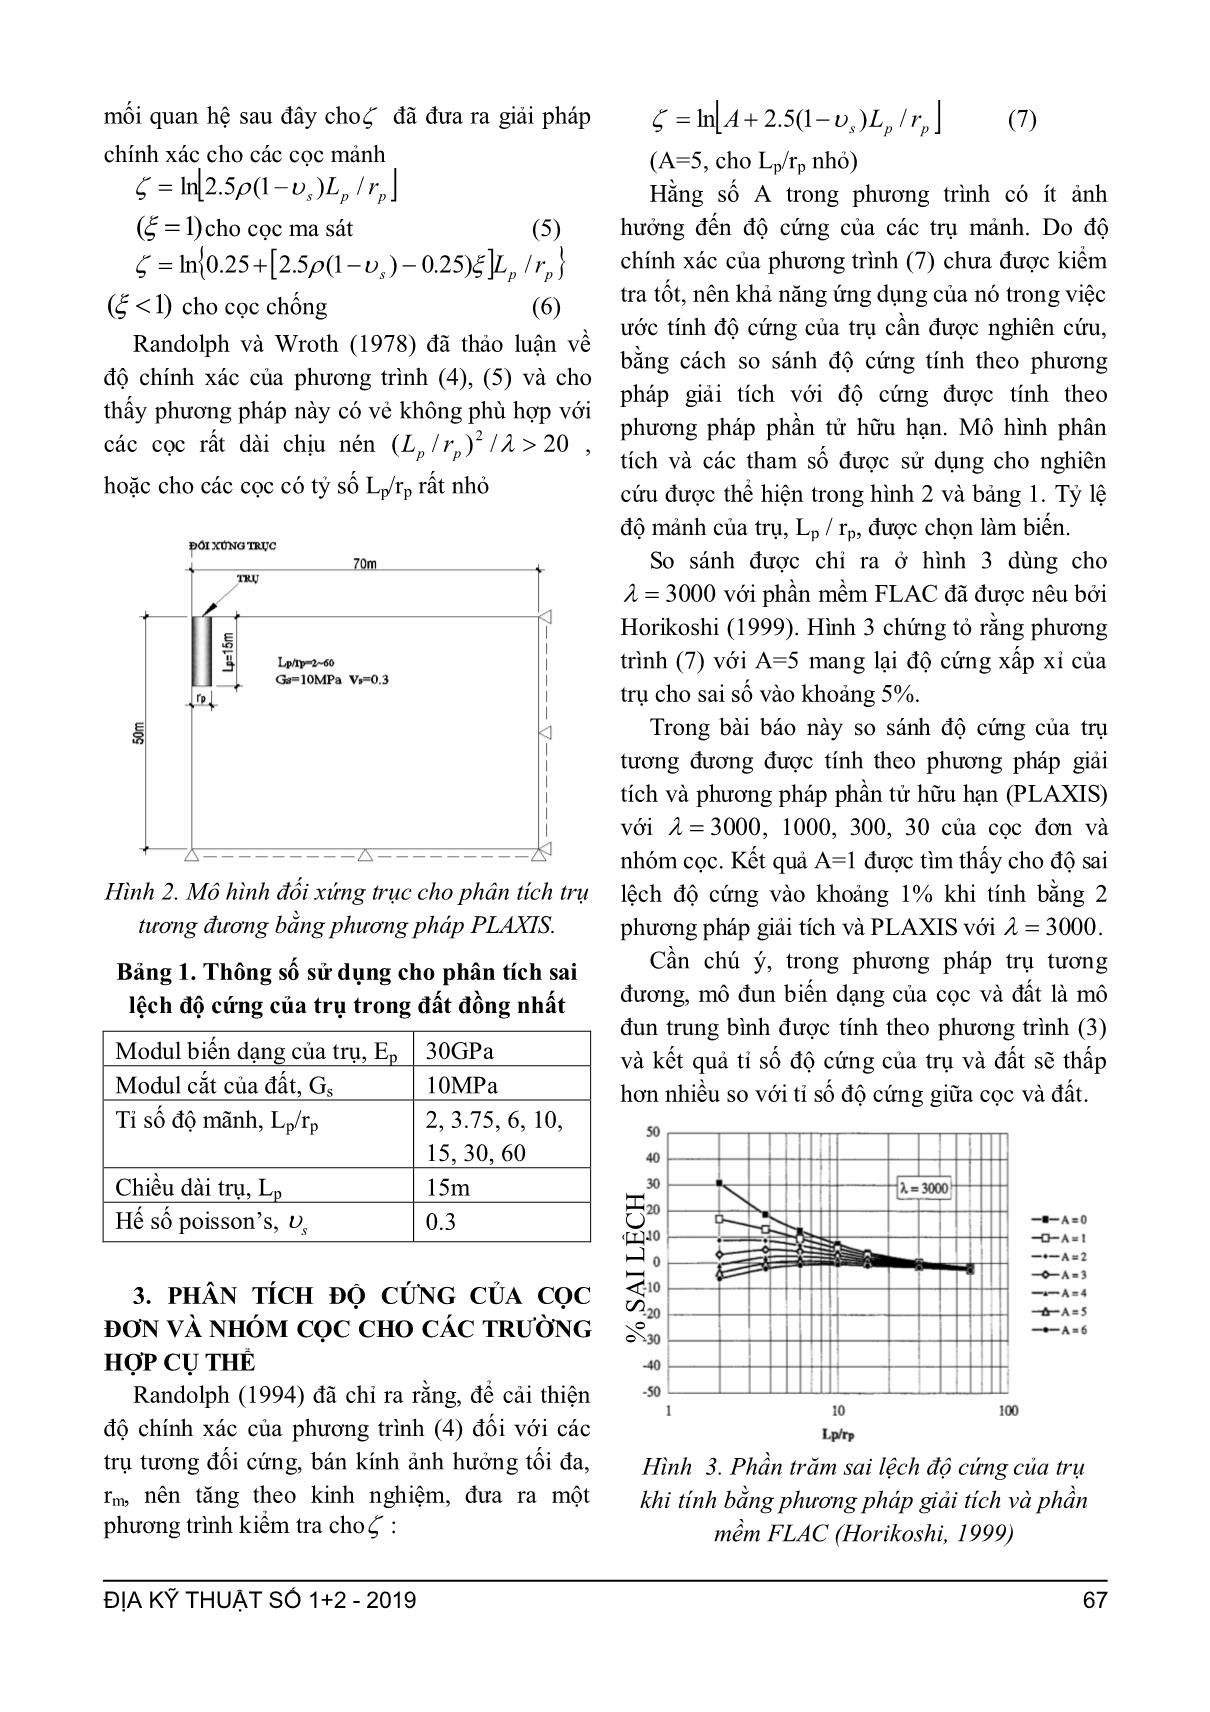 Phân tích các phương pháp tính toán độ cứng của cọc đơn và nhóm cọc trang 3